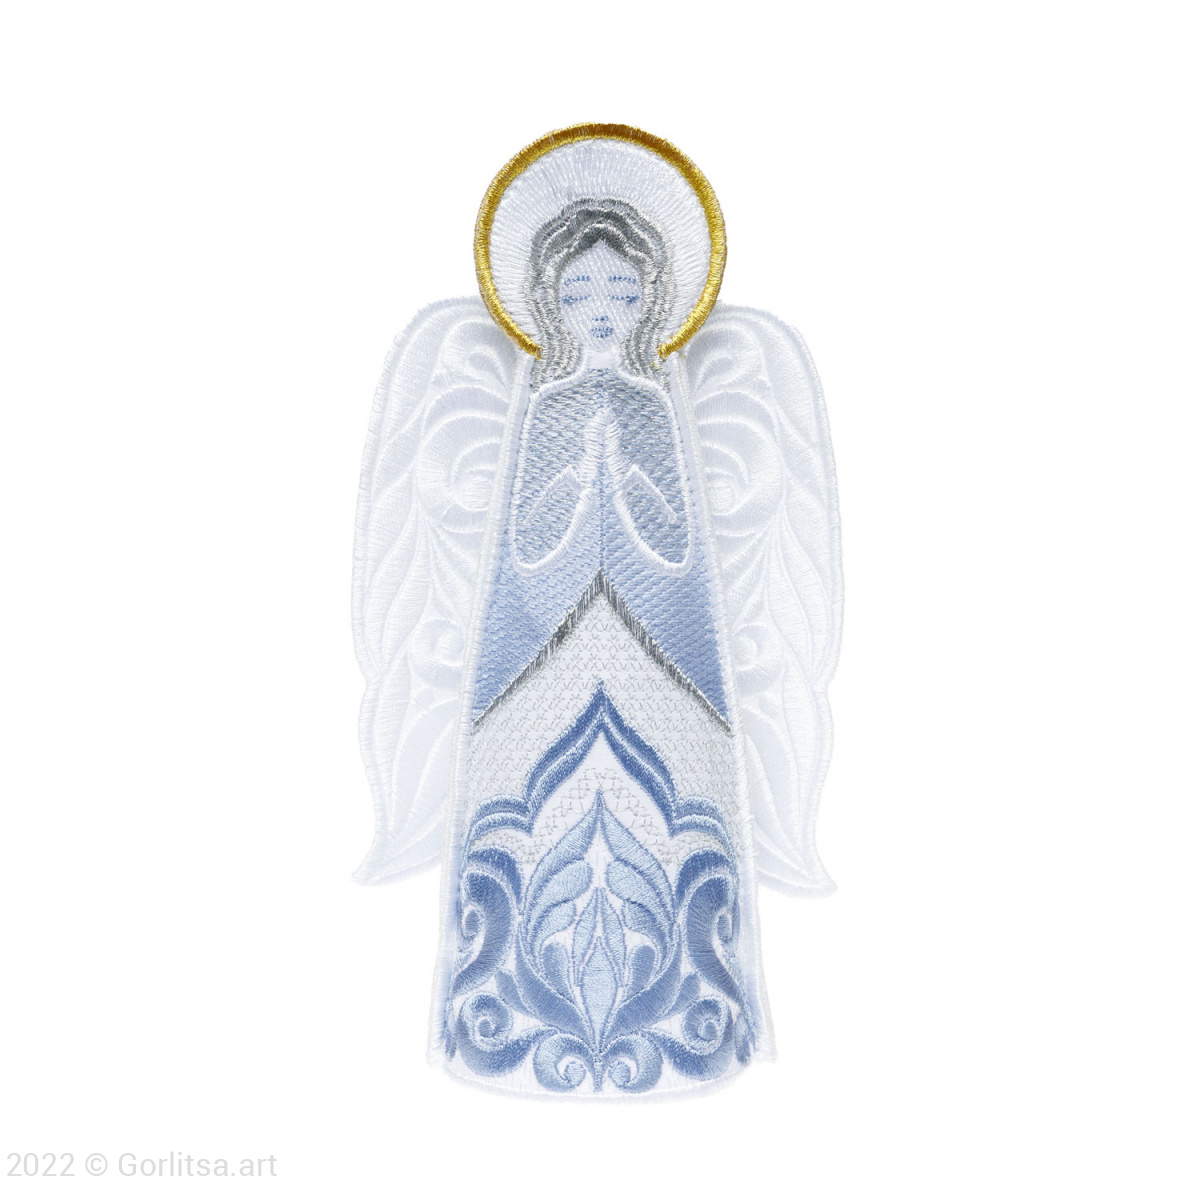 Кукла интерьерная «Ангел Пасхальный» белый/ шёлк, серебро, золото хлопок Никифоровская мануфактура